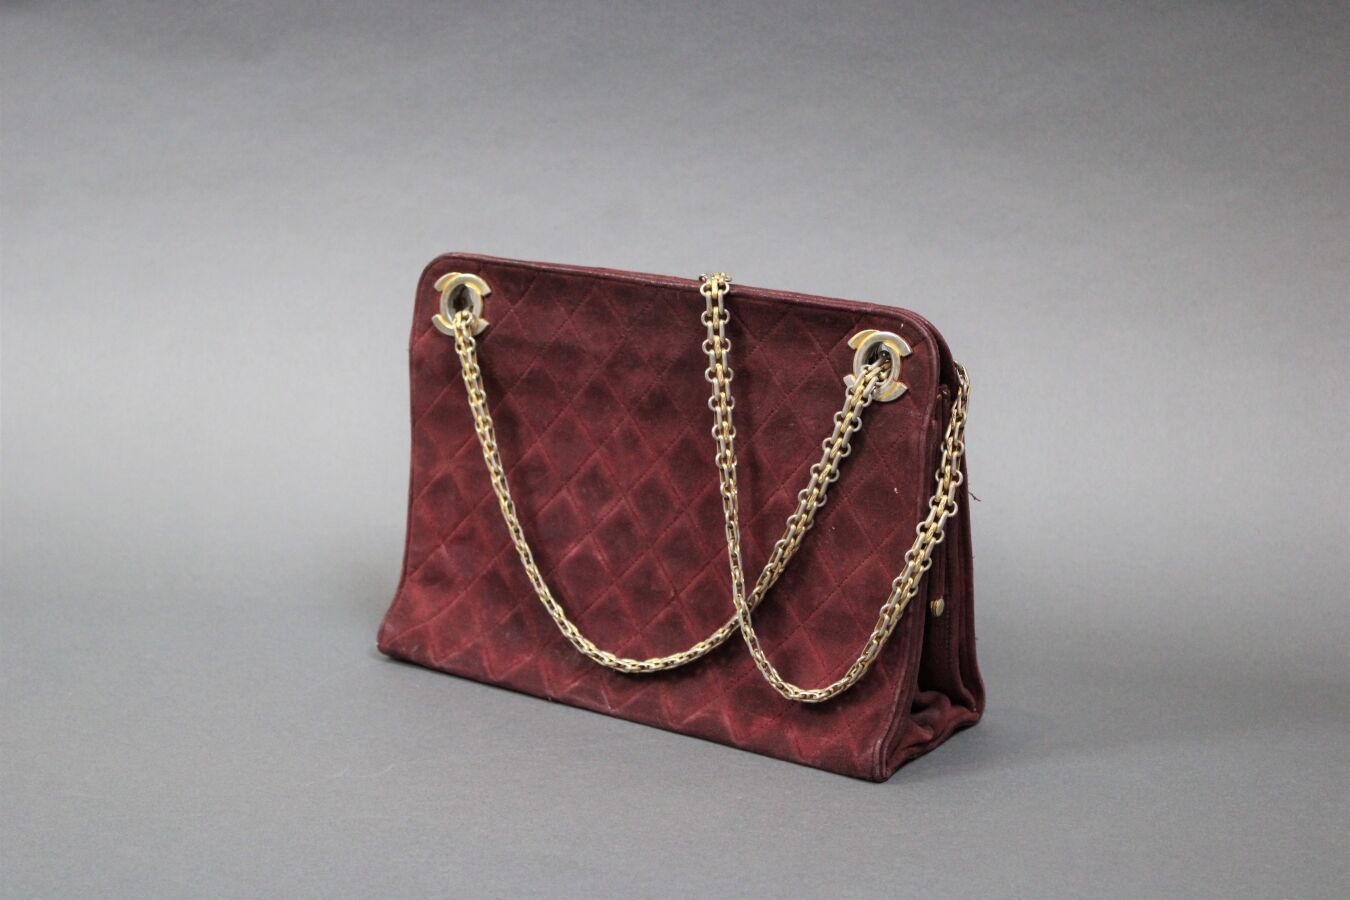 Null 香奈儿 法国制造
酒红色缝线皮革包，链条和镀金金属装饰，26 X 19厘米，约1980年（磨损，镀金脱落，原样）。